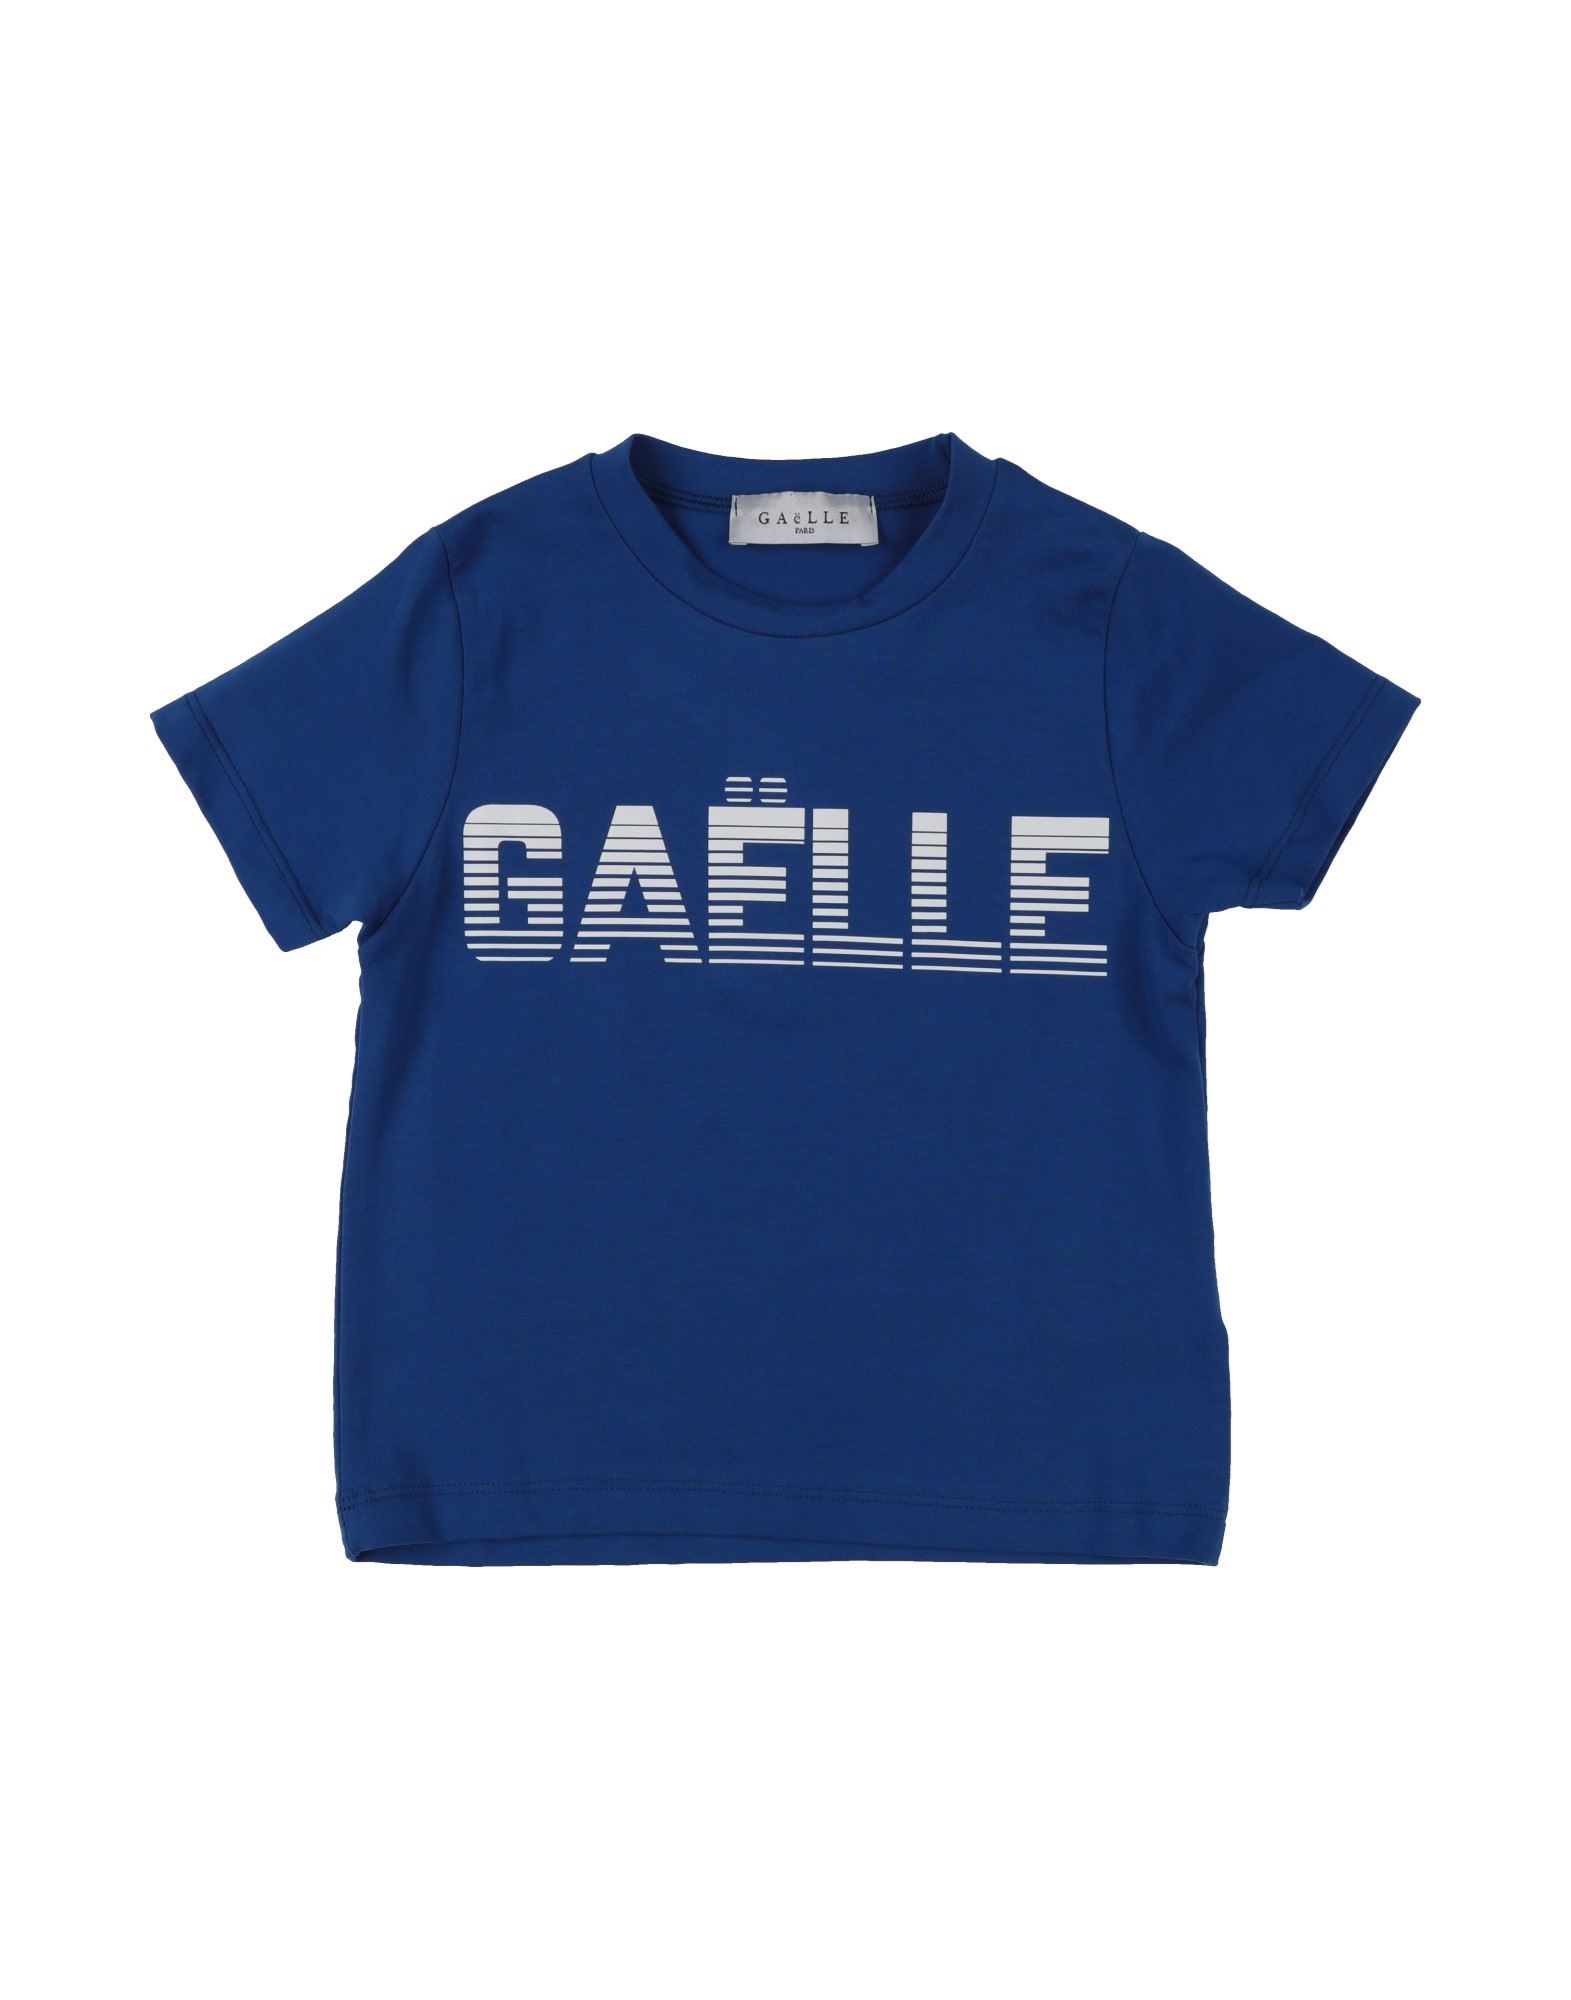 GAëLLE Paris T-shirts Kinder Blau von GAëLLE Paris